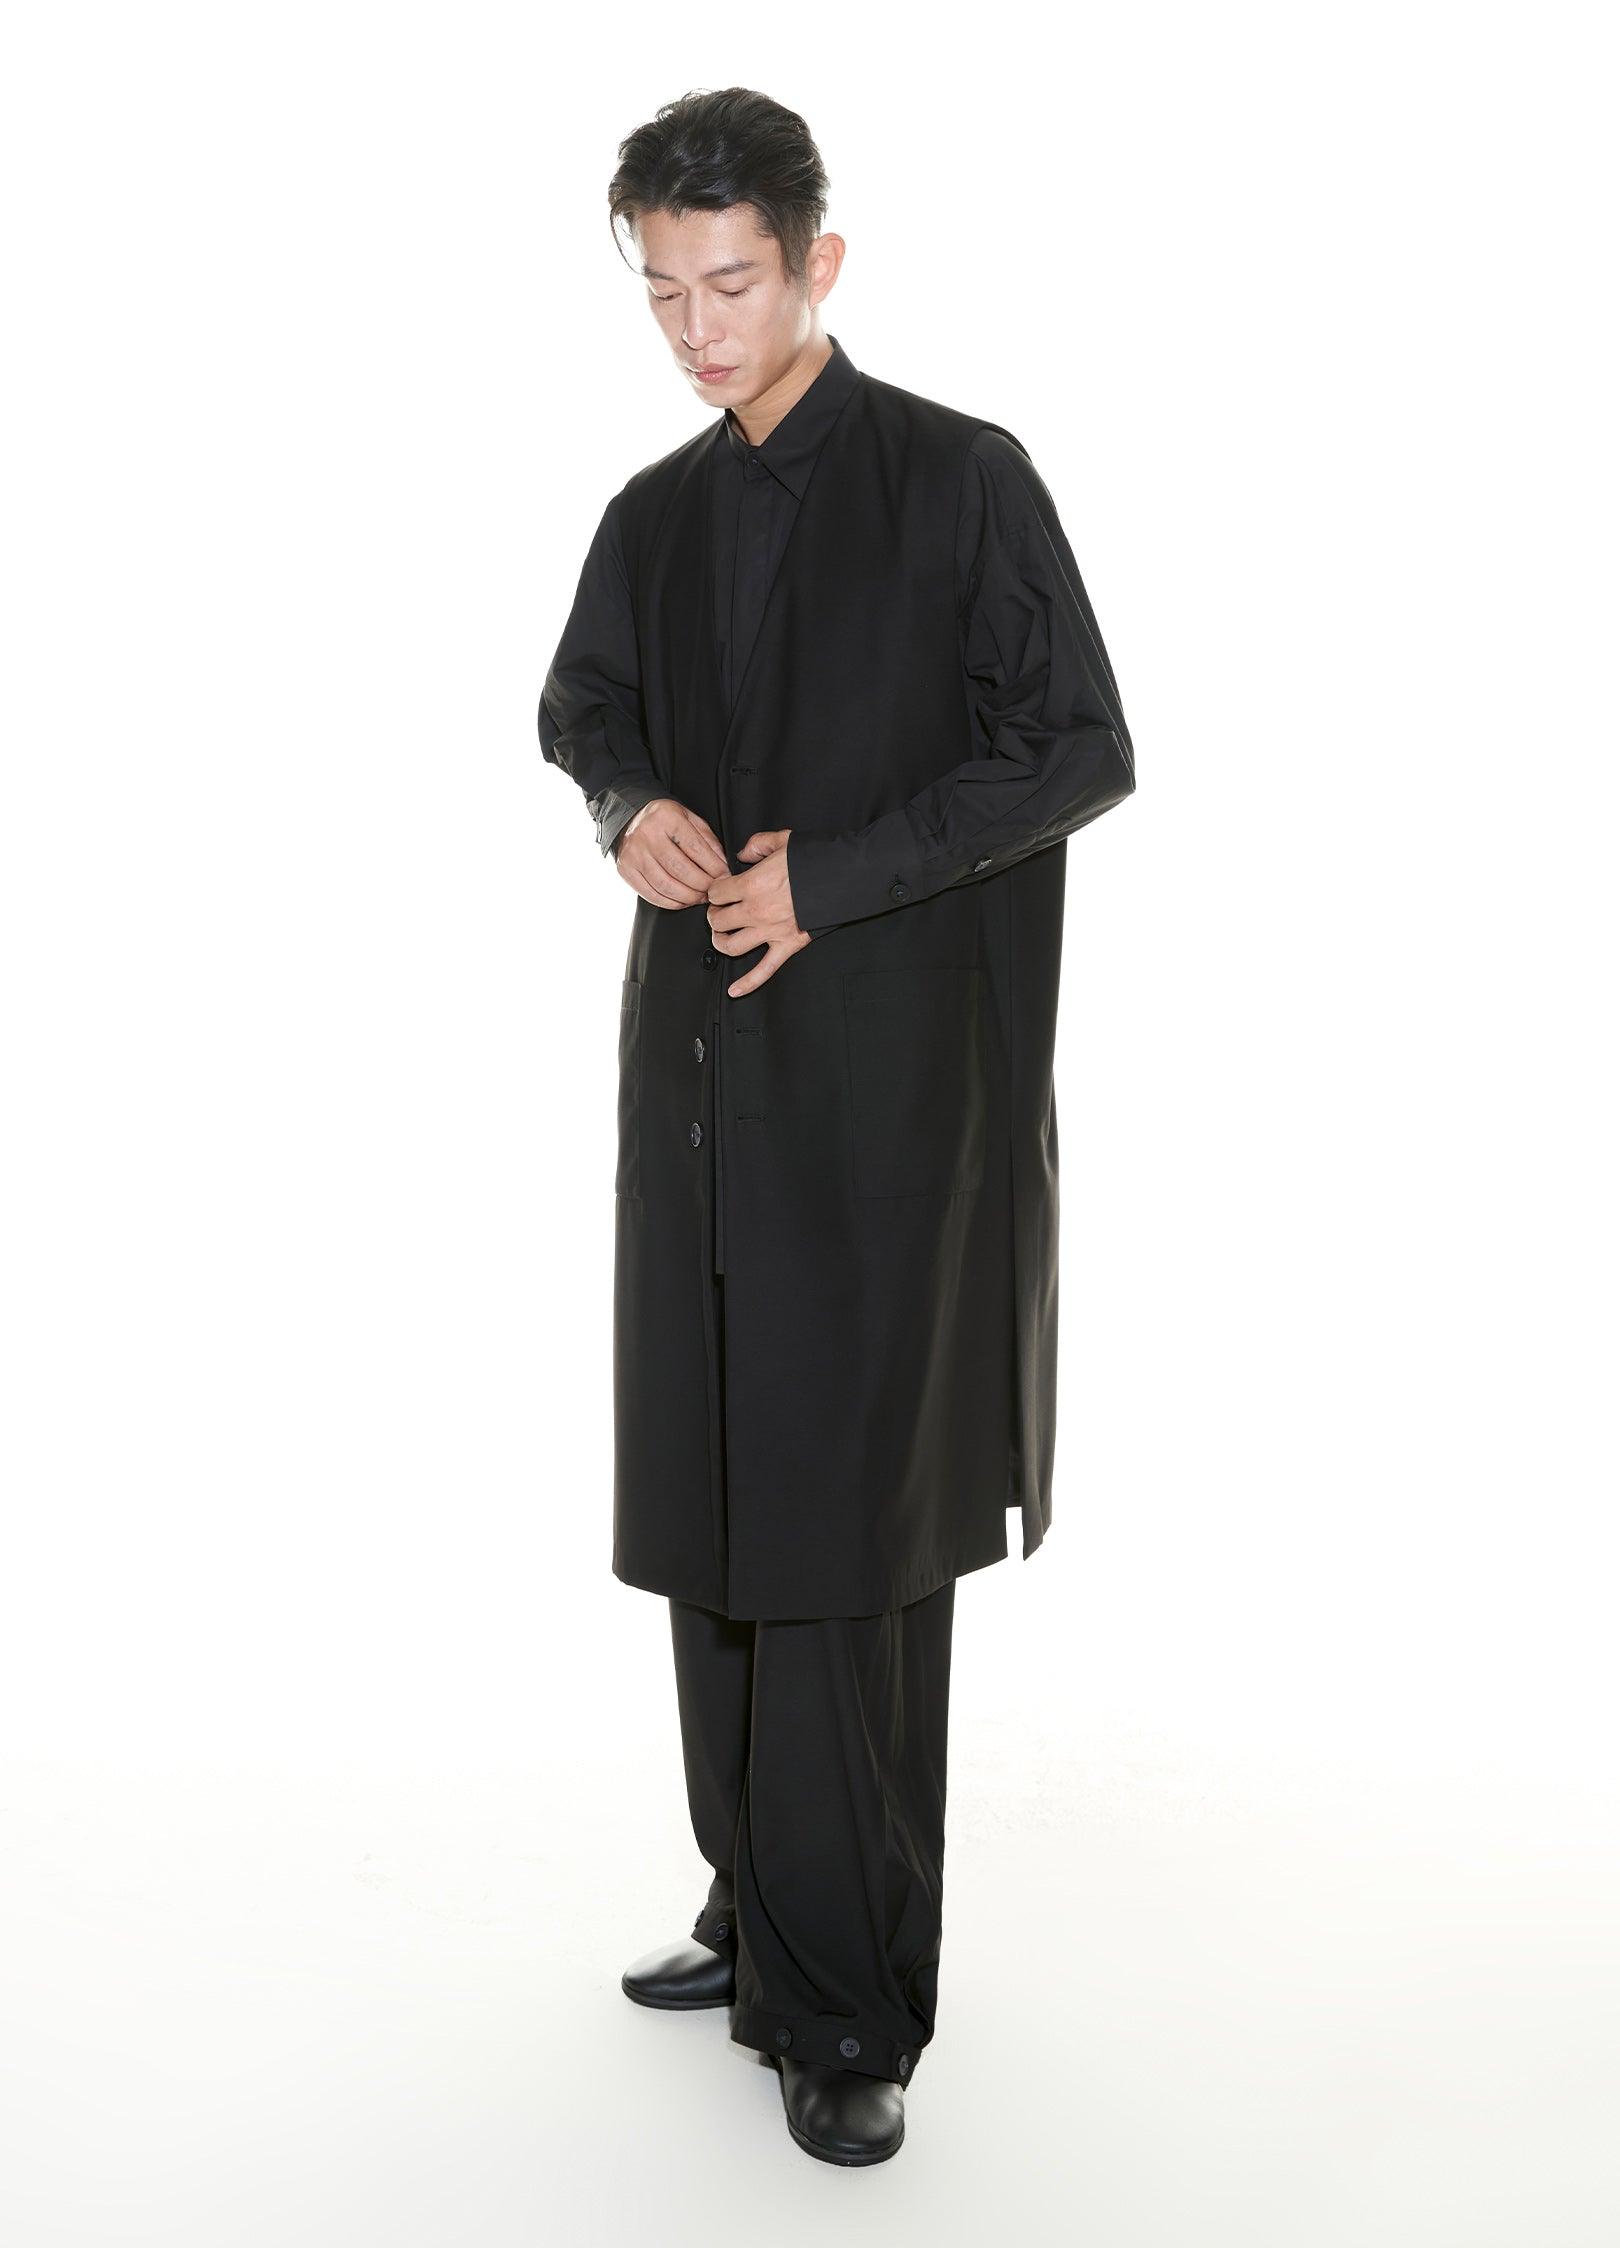 Elegant Black Suit Vest by VAPOUR BLUE - chiclara